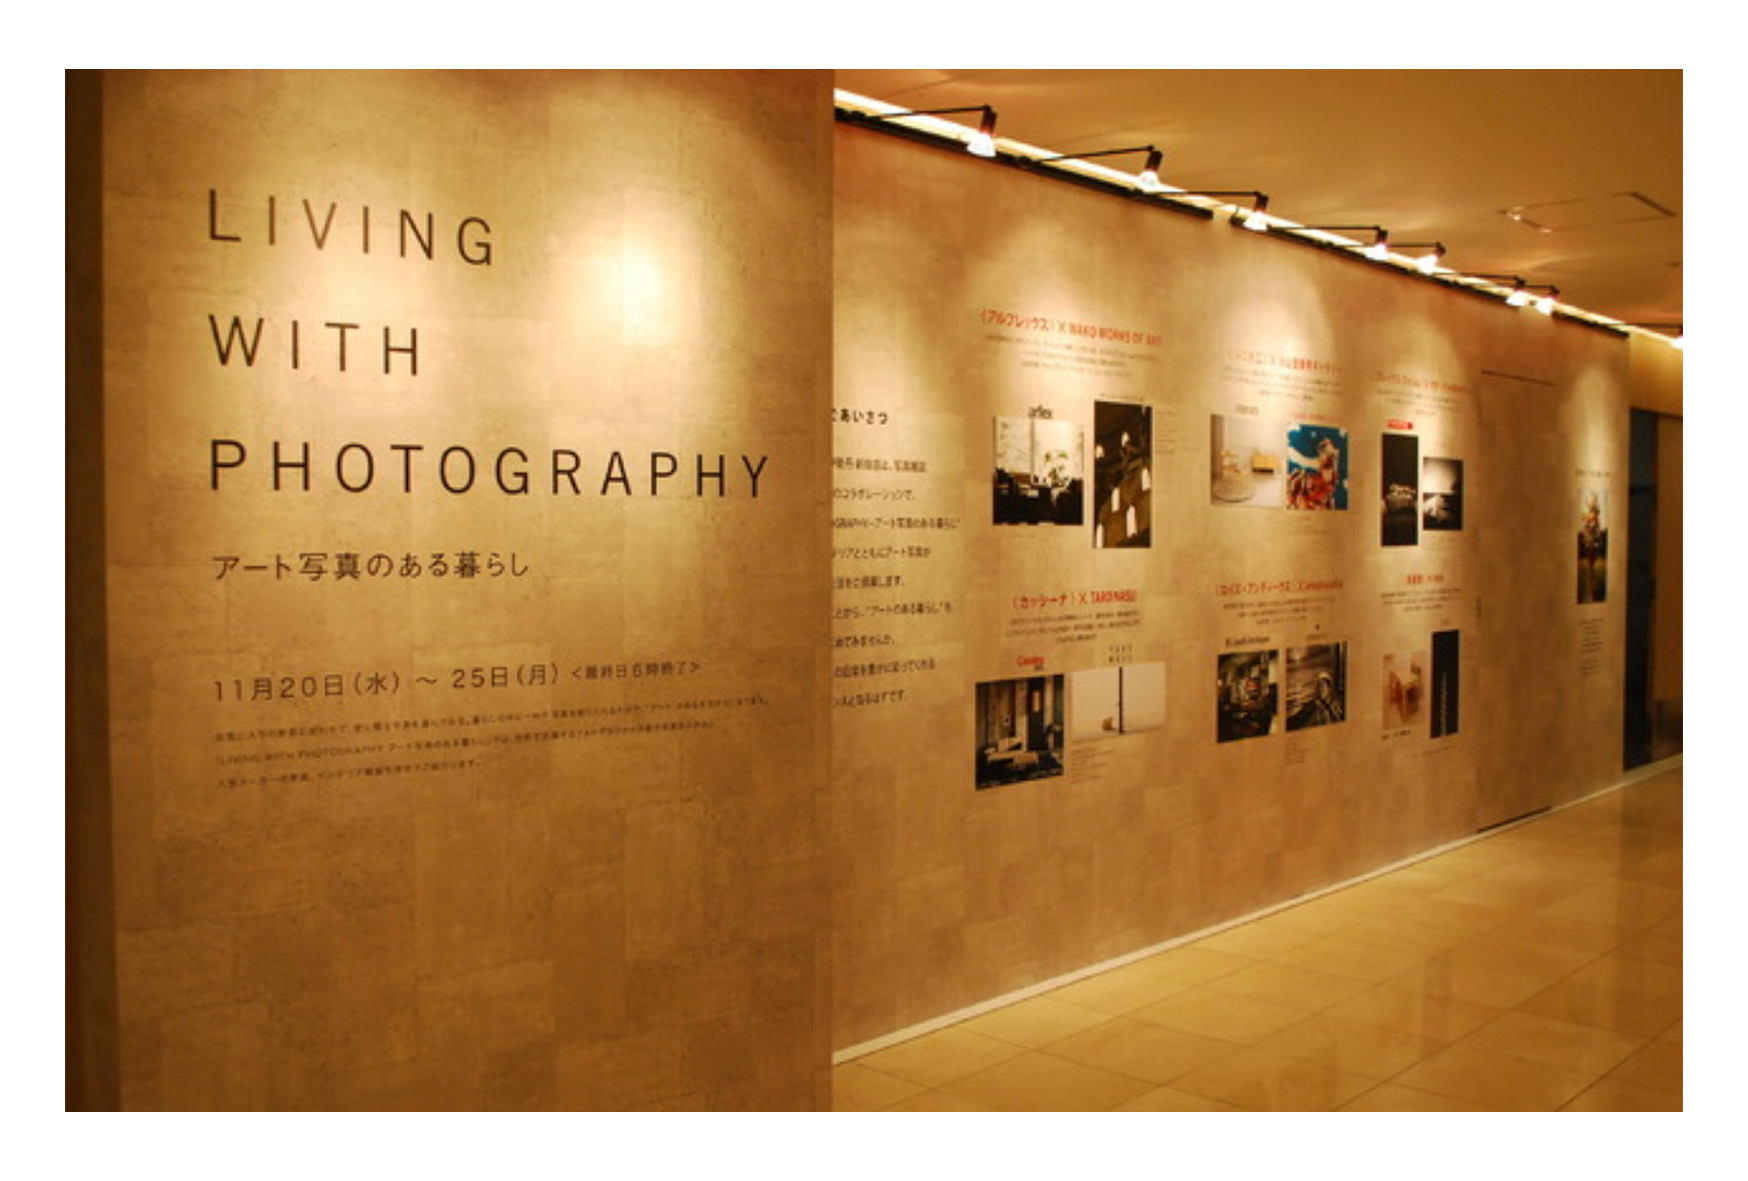 “Living with Art Photograph”, ISETAN Shinjuku x IMA, Tokyo Japan, Nov.20-25, 2013, group show